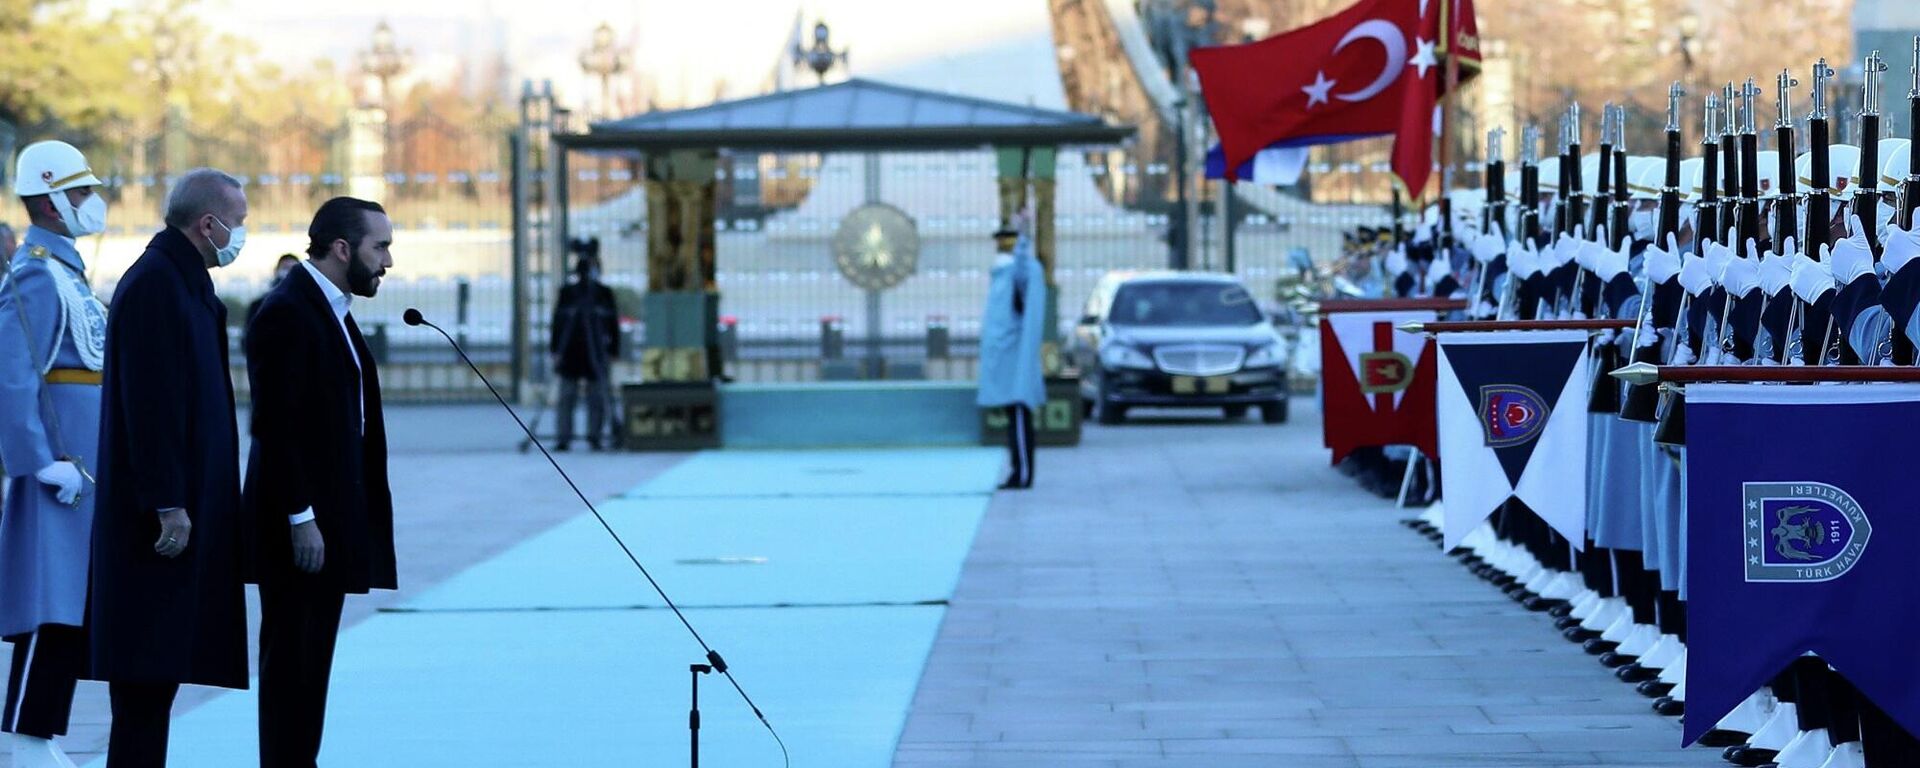 Cumhurbaşkanı Recep Tayyip Erdoğan, Türkiye'ye resmi ziyarette bulunan El Salvador Cumhurbaşkanı Nayib Bukele'yi resmi törenle karşıladı. - Sputnik Türkiye, 1920, 20.01.2022